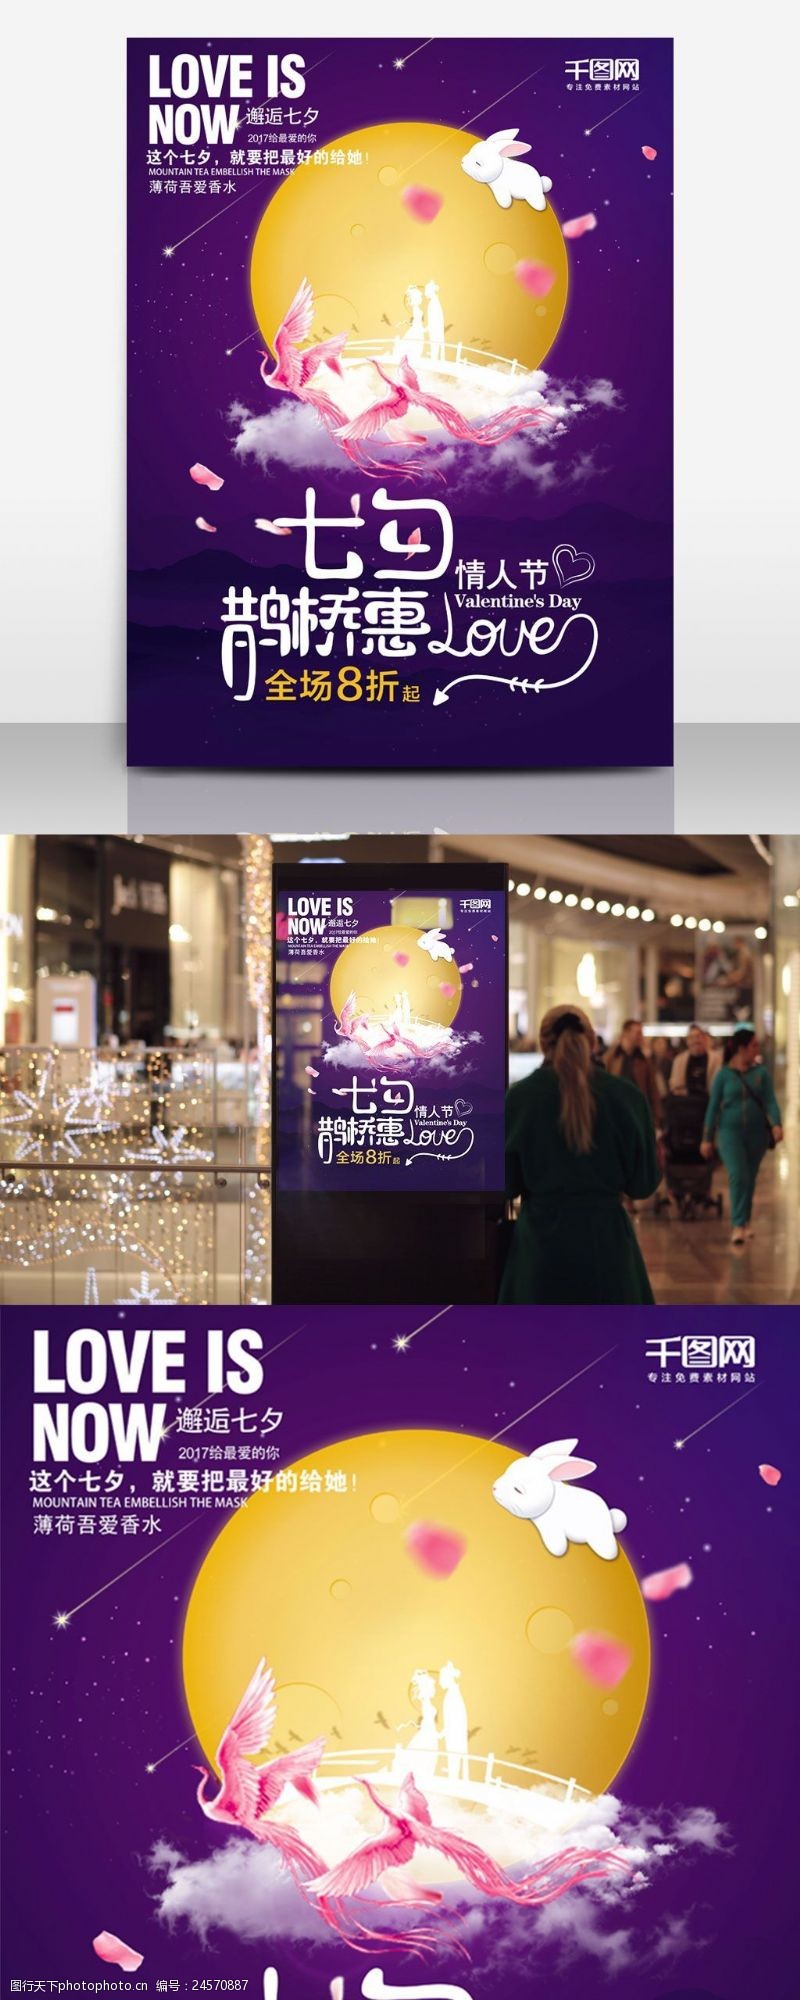 紫色月圆余量鹊桥相见七夕情人节促销海报设计